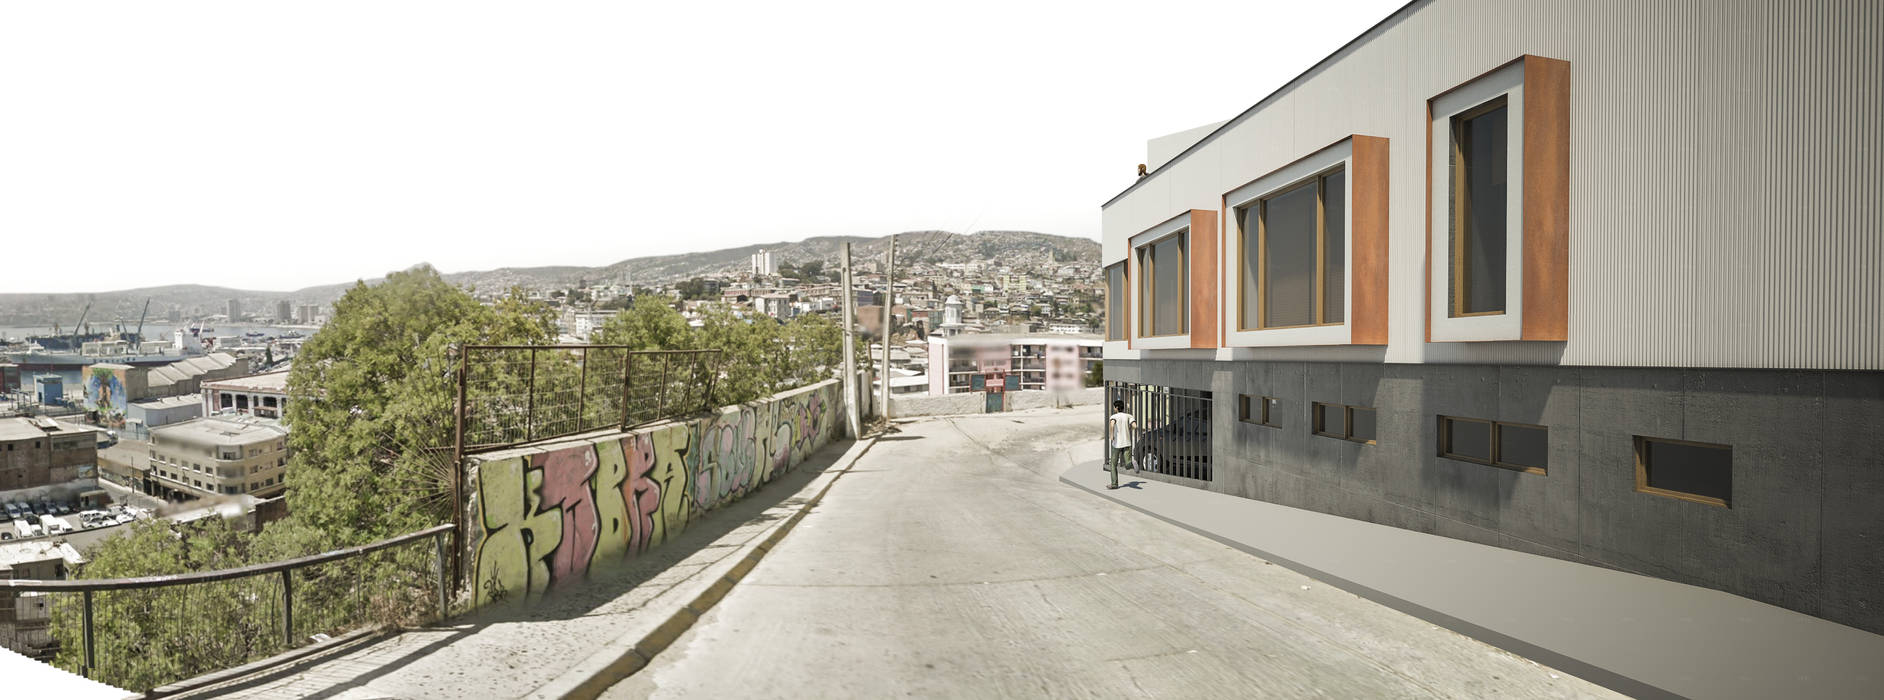 Casa Arrayán, Materia prima arquitectos Materia prima arquitectos Casas estilo moderno: ideas, arquitectura e imágenes Valparaiso